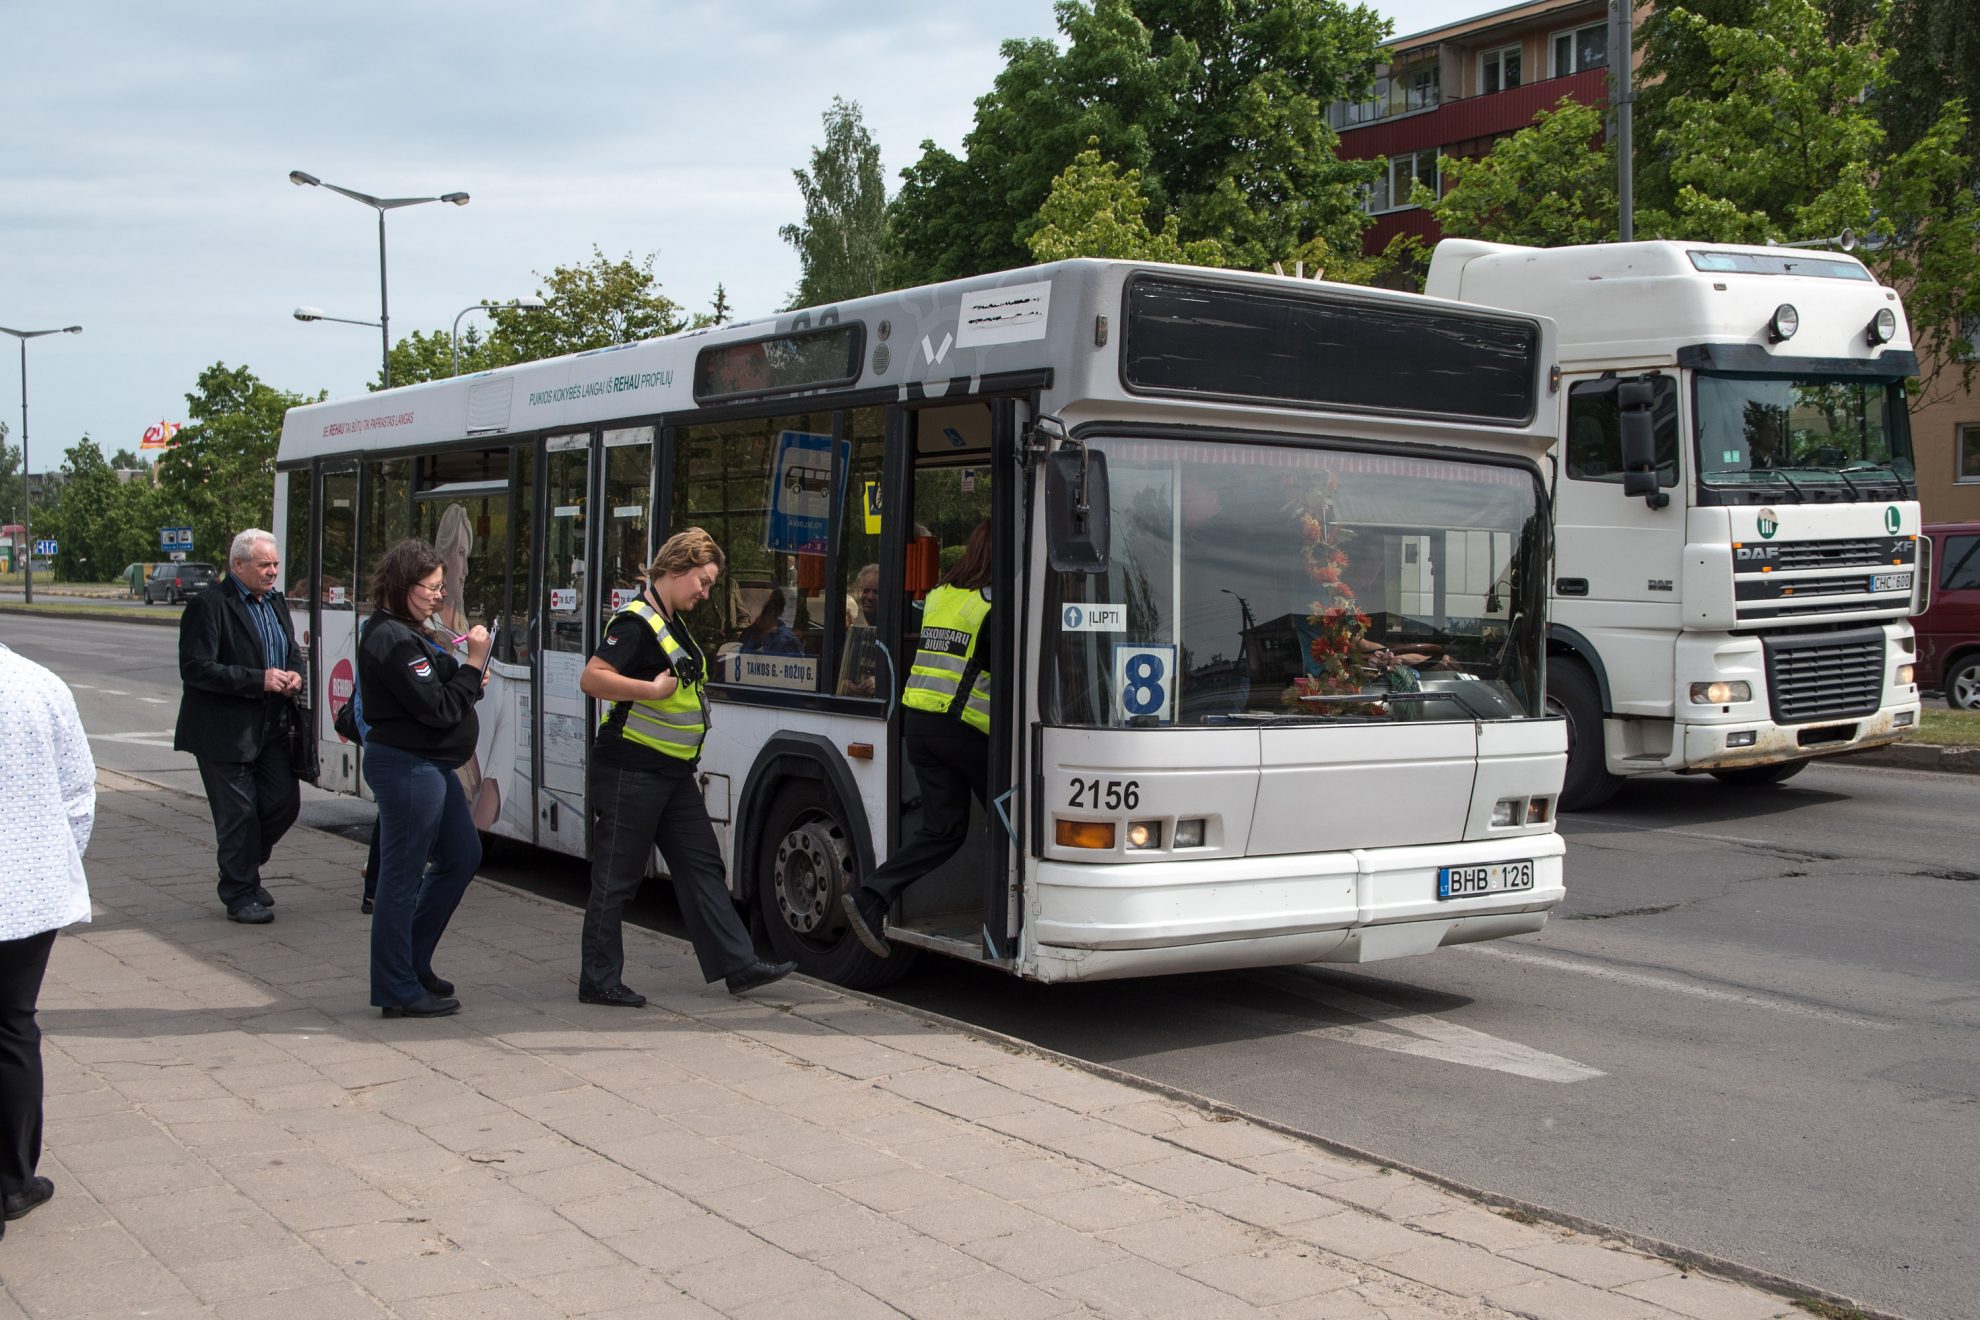 Siekdama gyventojams patrauklesnio viešojo transporto, balandžio mėnesį Panevėžio miesto savivaldybė atliko elektroninę gyventojų apklausą. Ja aiškintasi, ir kaip panevėžiečiai vertina autobusų parko veiklą.